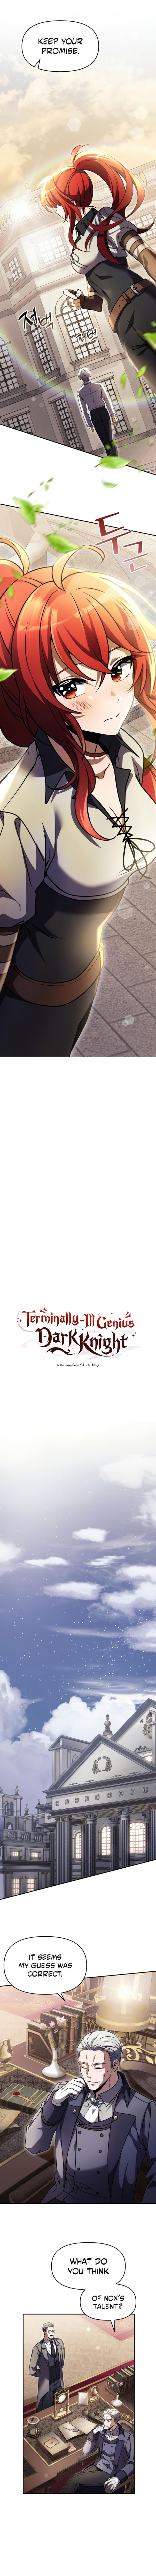 Terminally-Ill Genius Dark Knight Chapter 8 page 7